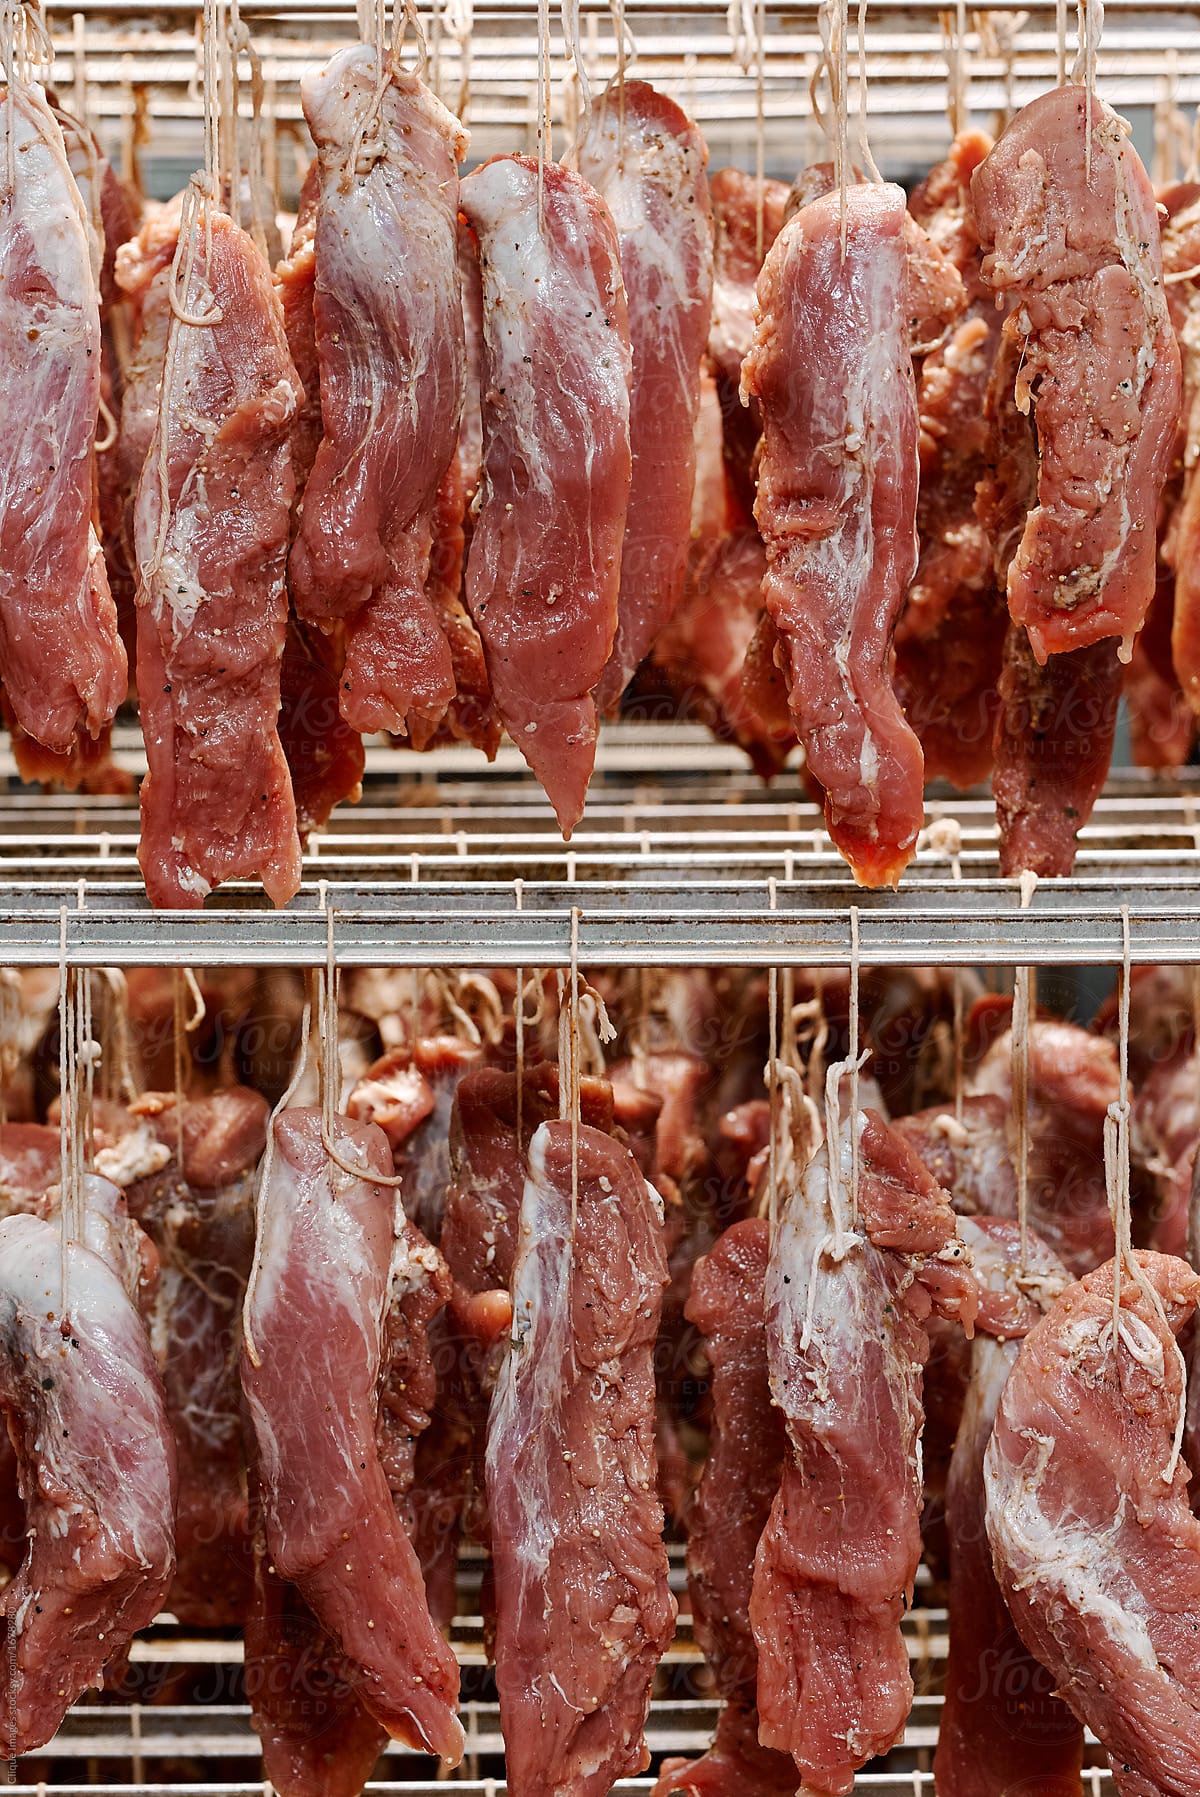 Pork cuts in butcher shop